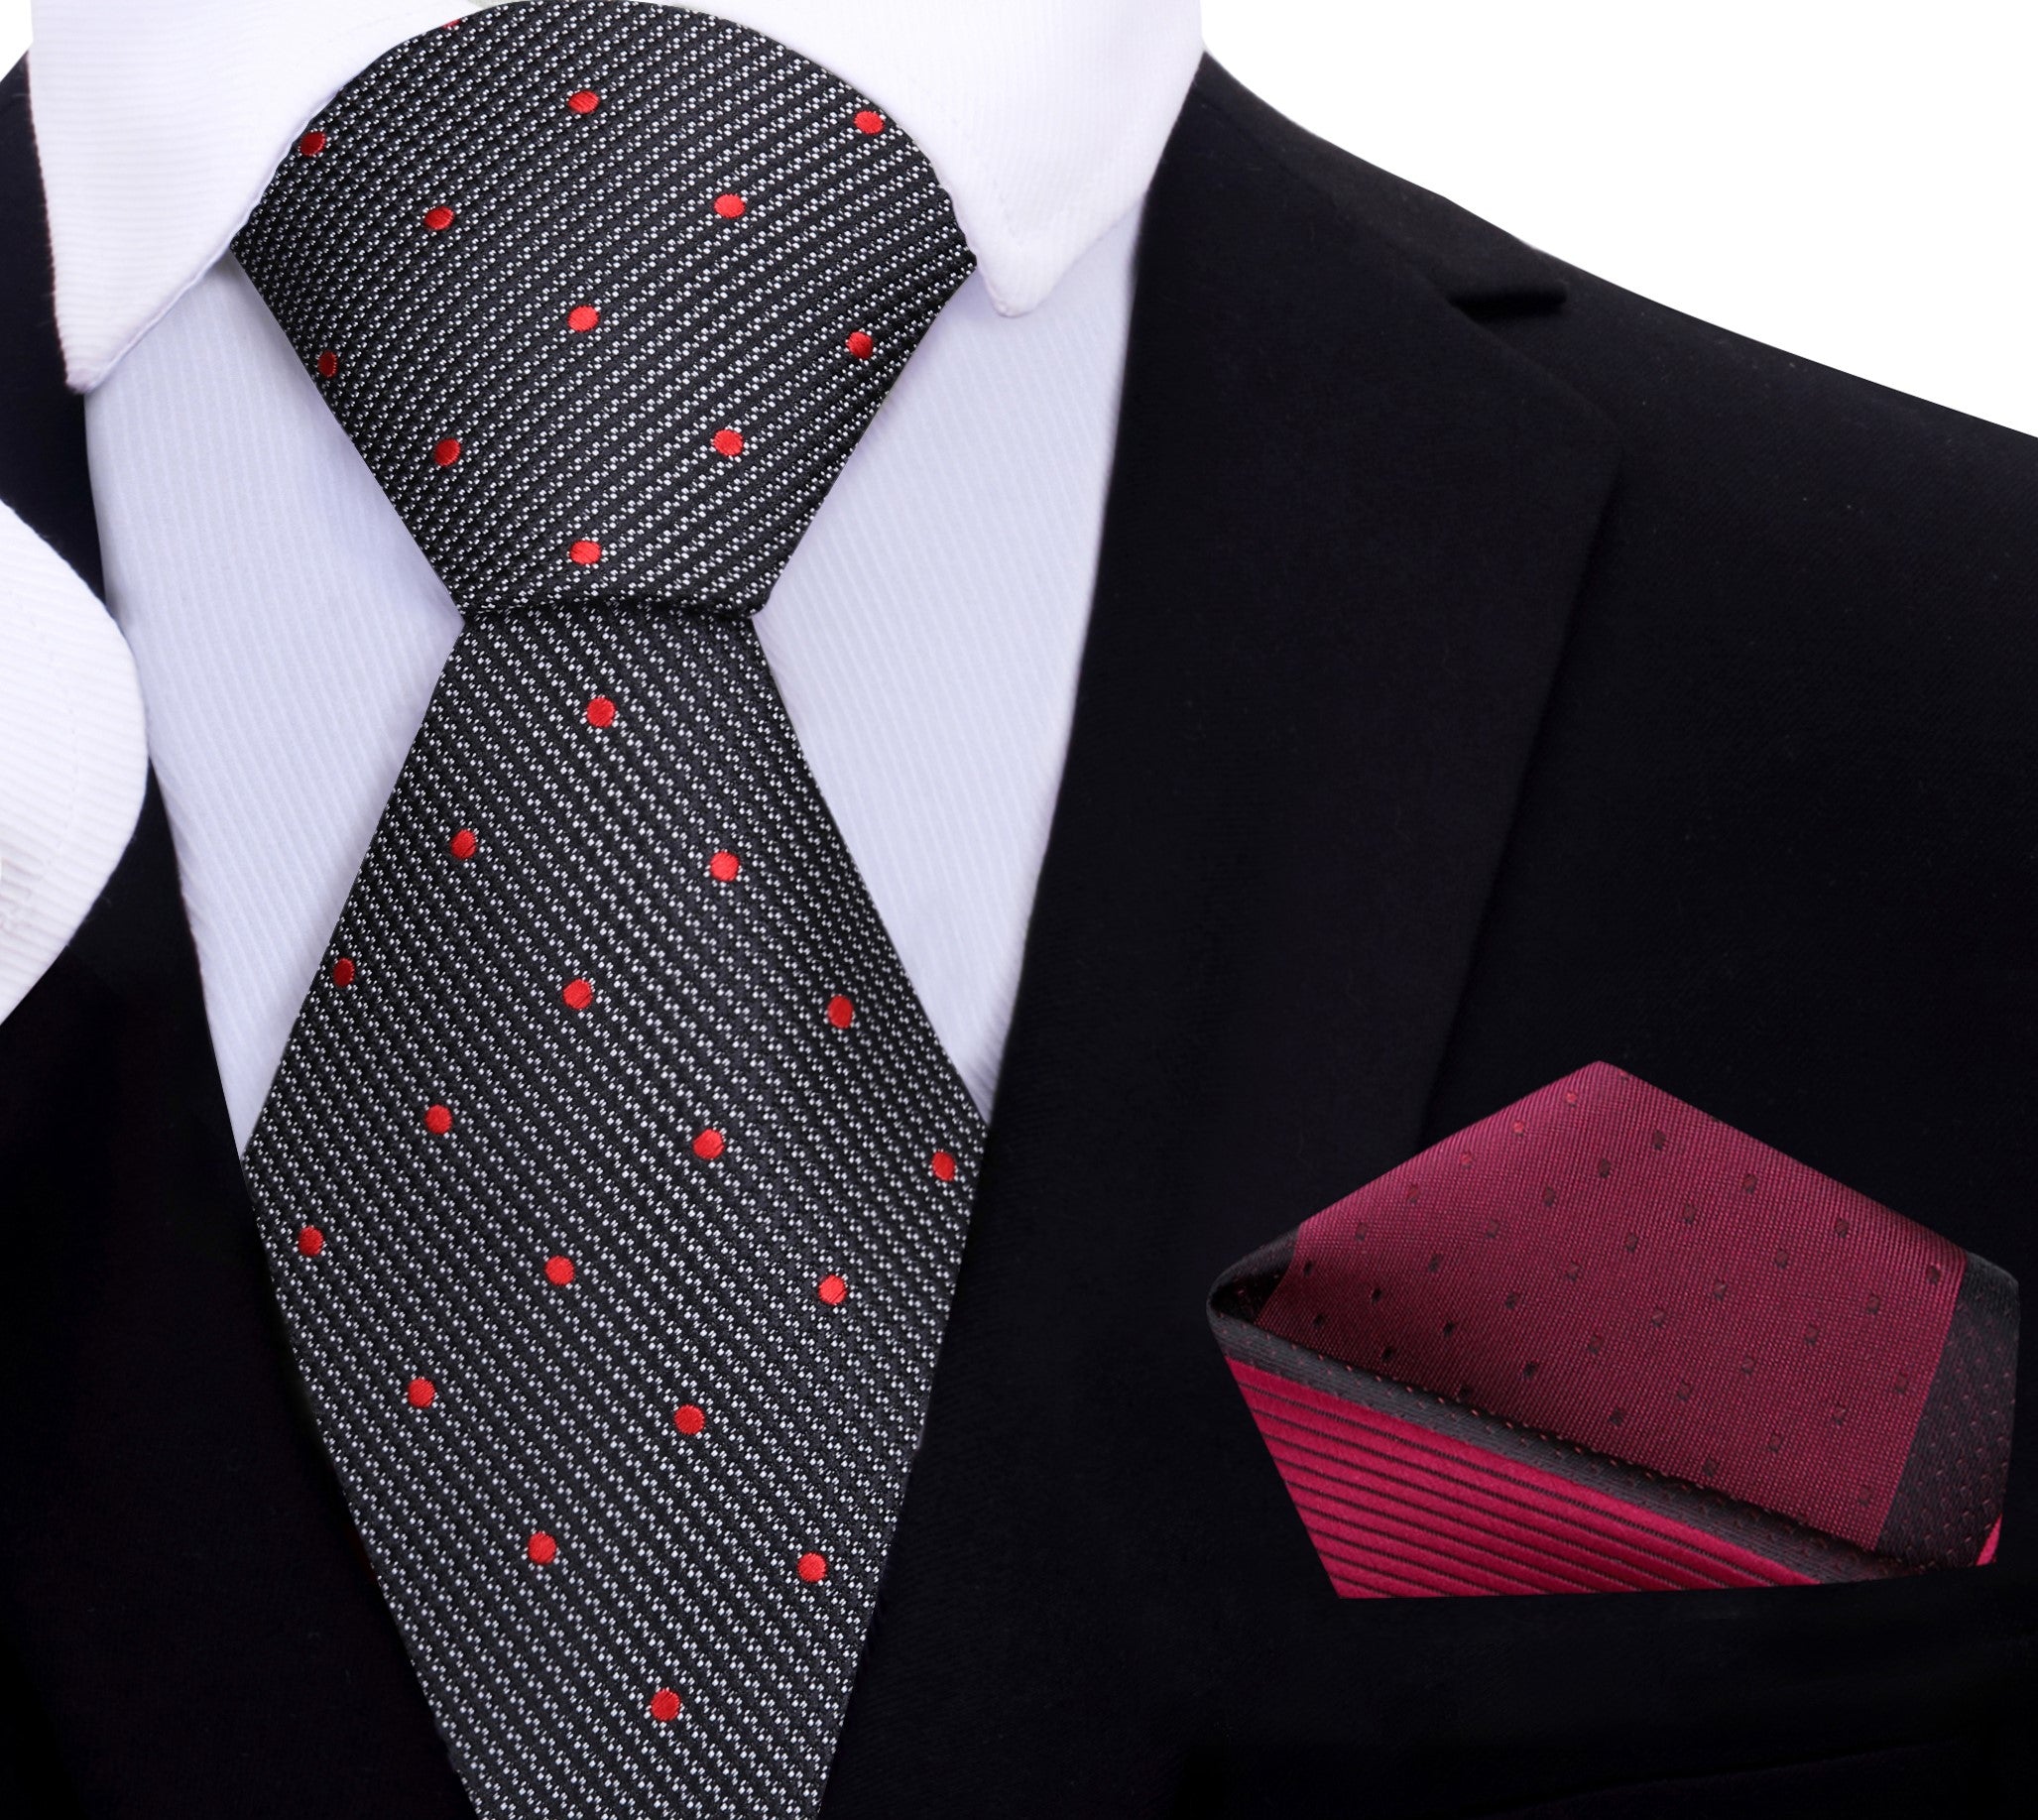 Dark red dotted tie